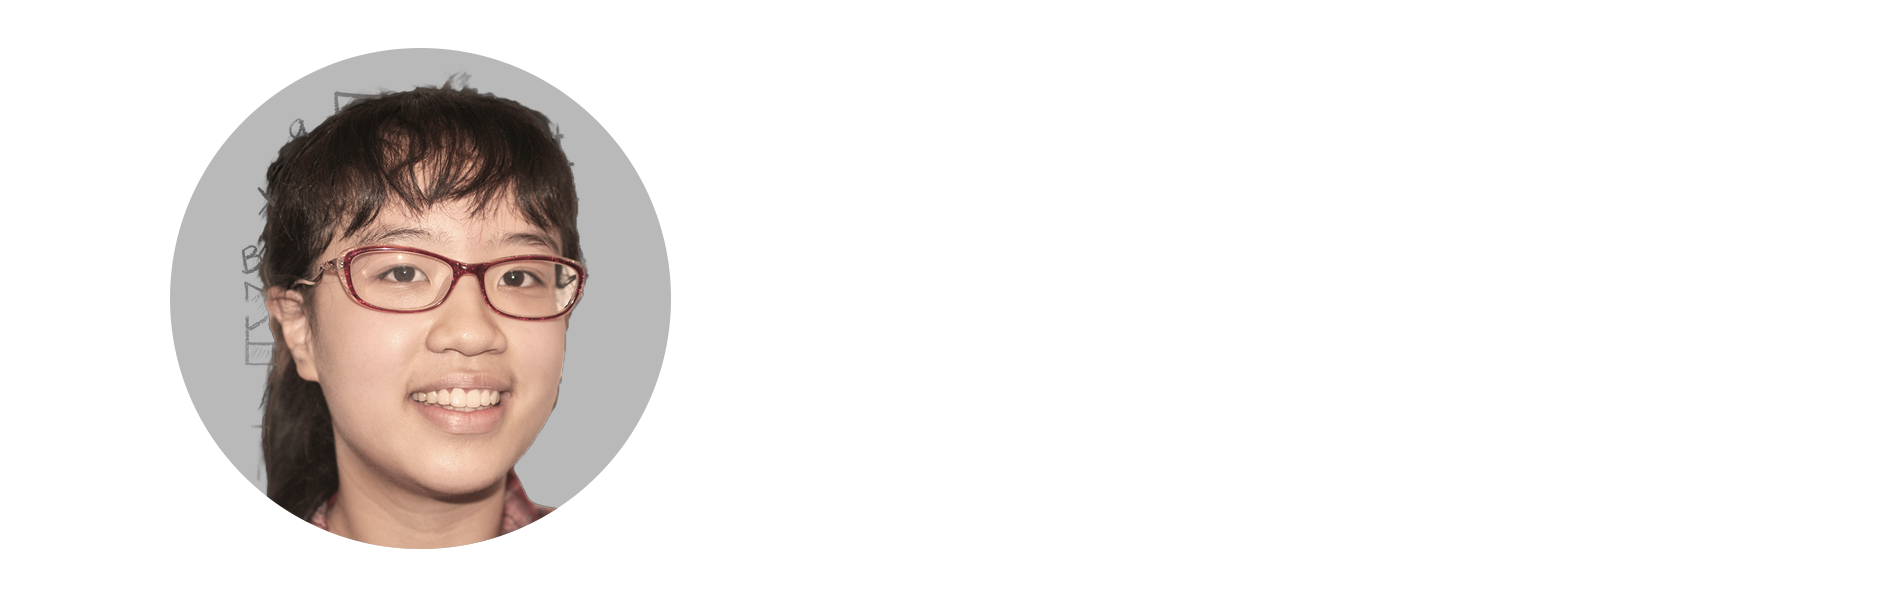 THU-NGA